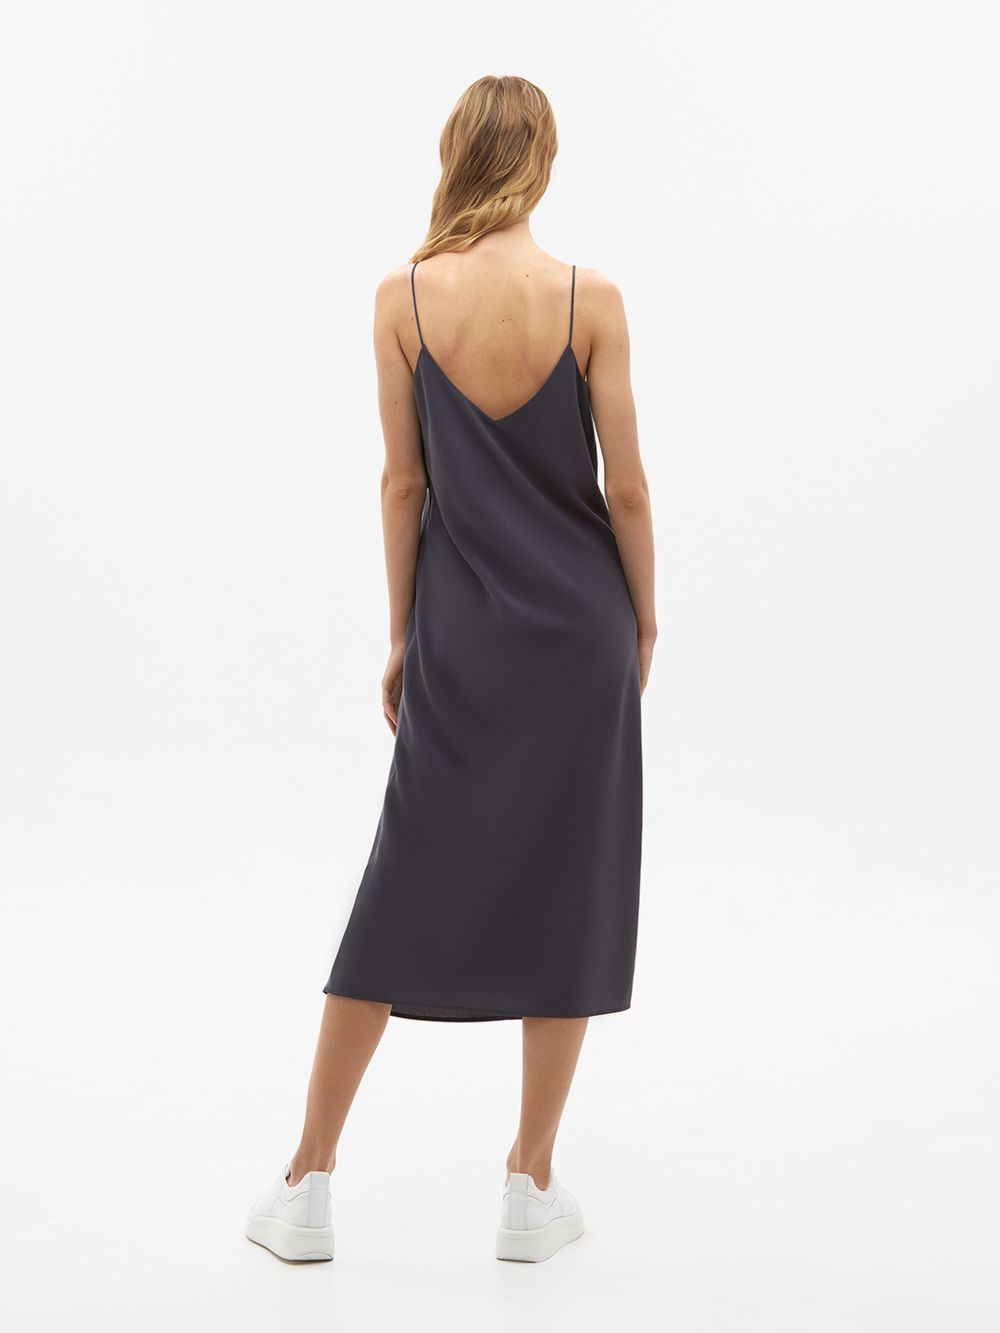 Лёгкое актуальное платье-комбинация ASPEN из экологичного модала. Изображение 5